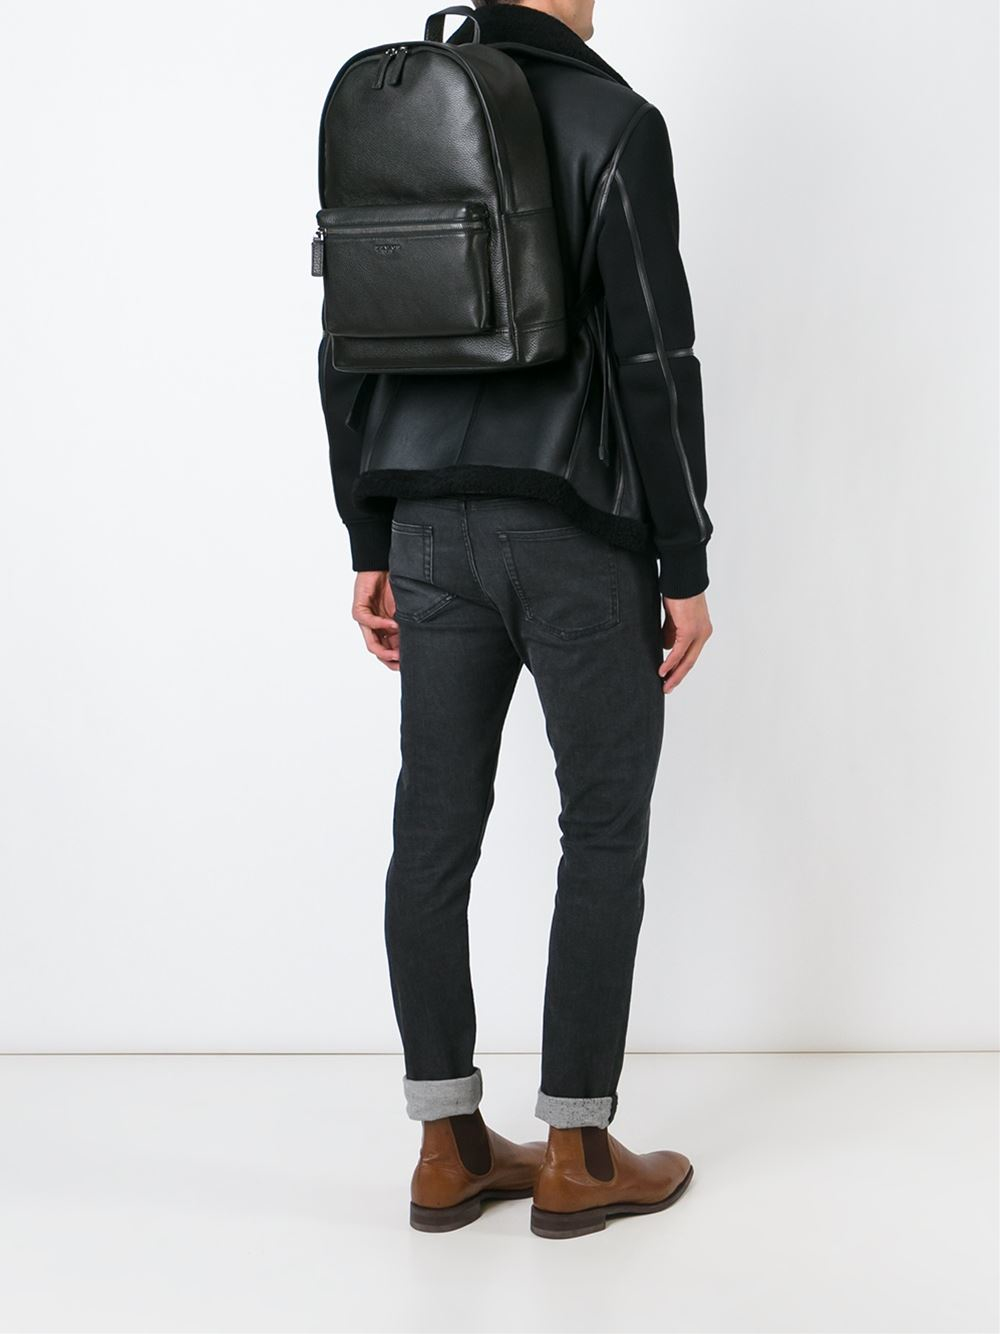 Michael Kors 'bryant' Backpack in Black for Men | Lyst UK